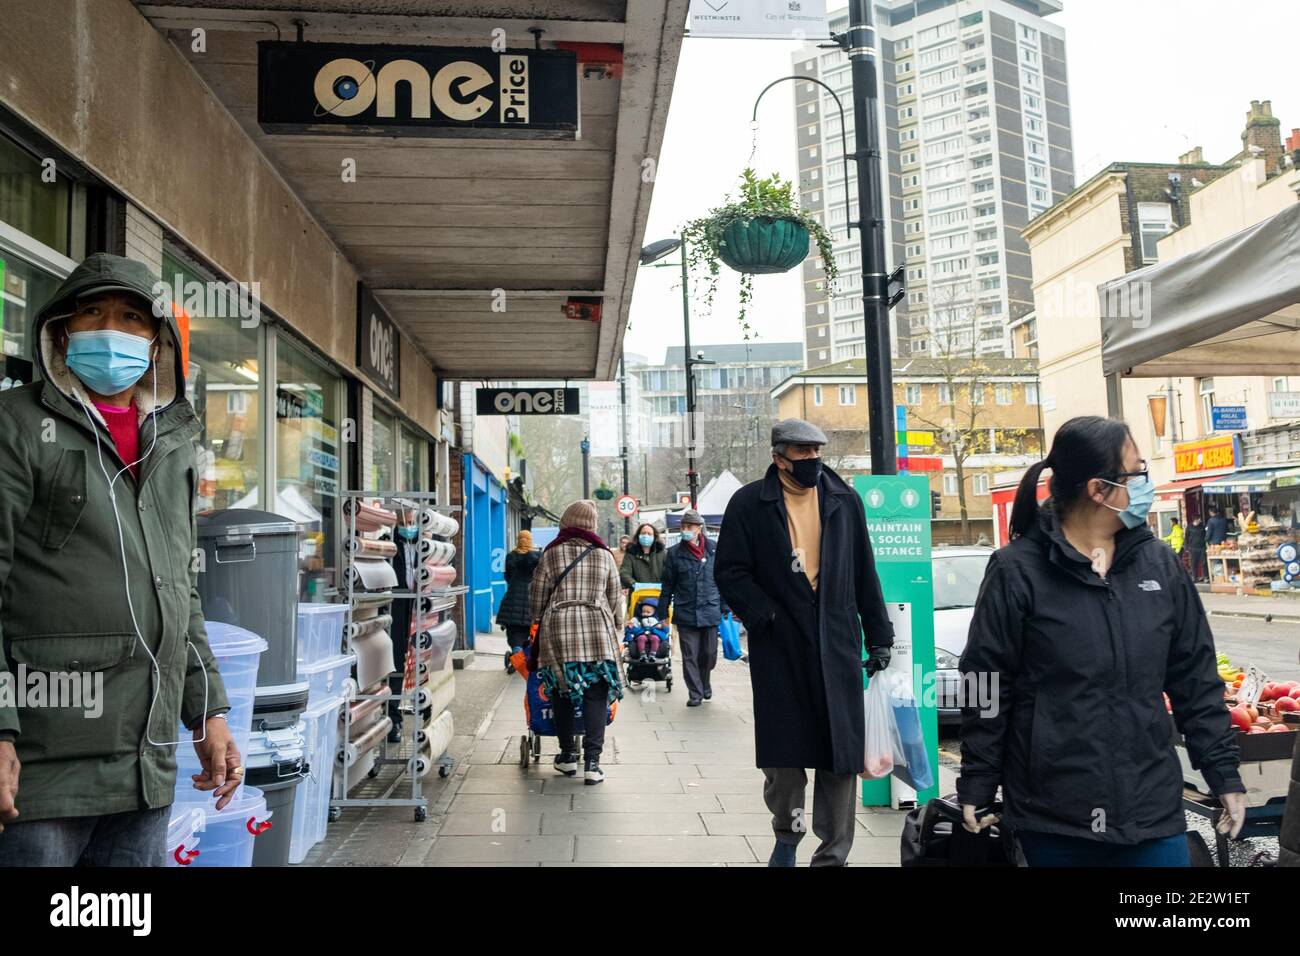 London - Januar 2020: Ethnisch unterschiedliche Menschen tragen Covid 19 Gesichtsmasken auf der Church Street bei der Egdware Road in Westminster. Stockfoto